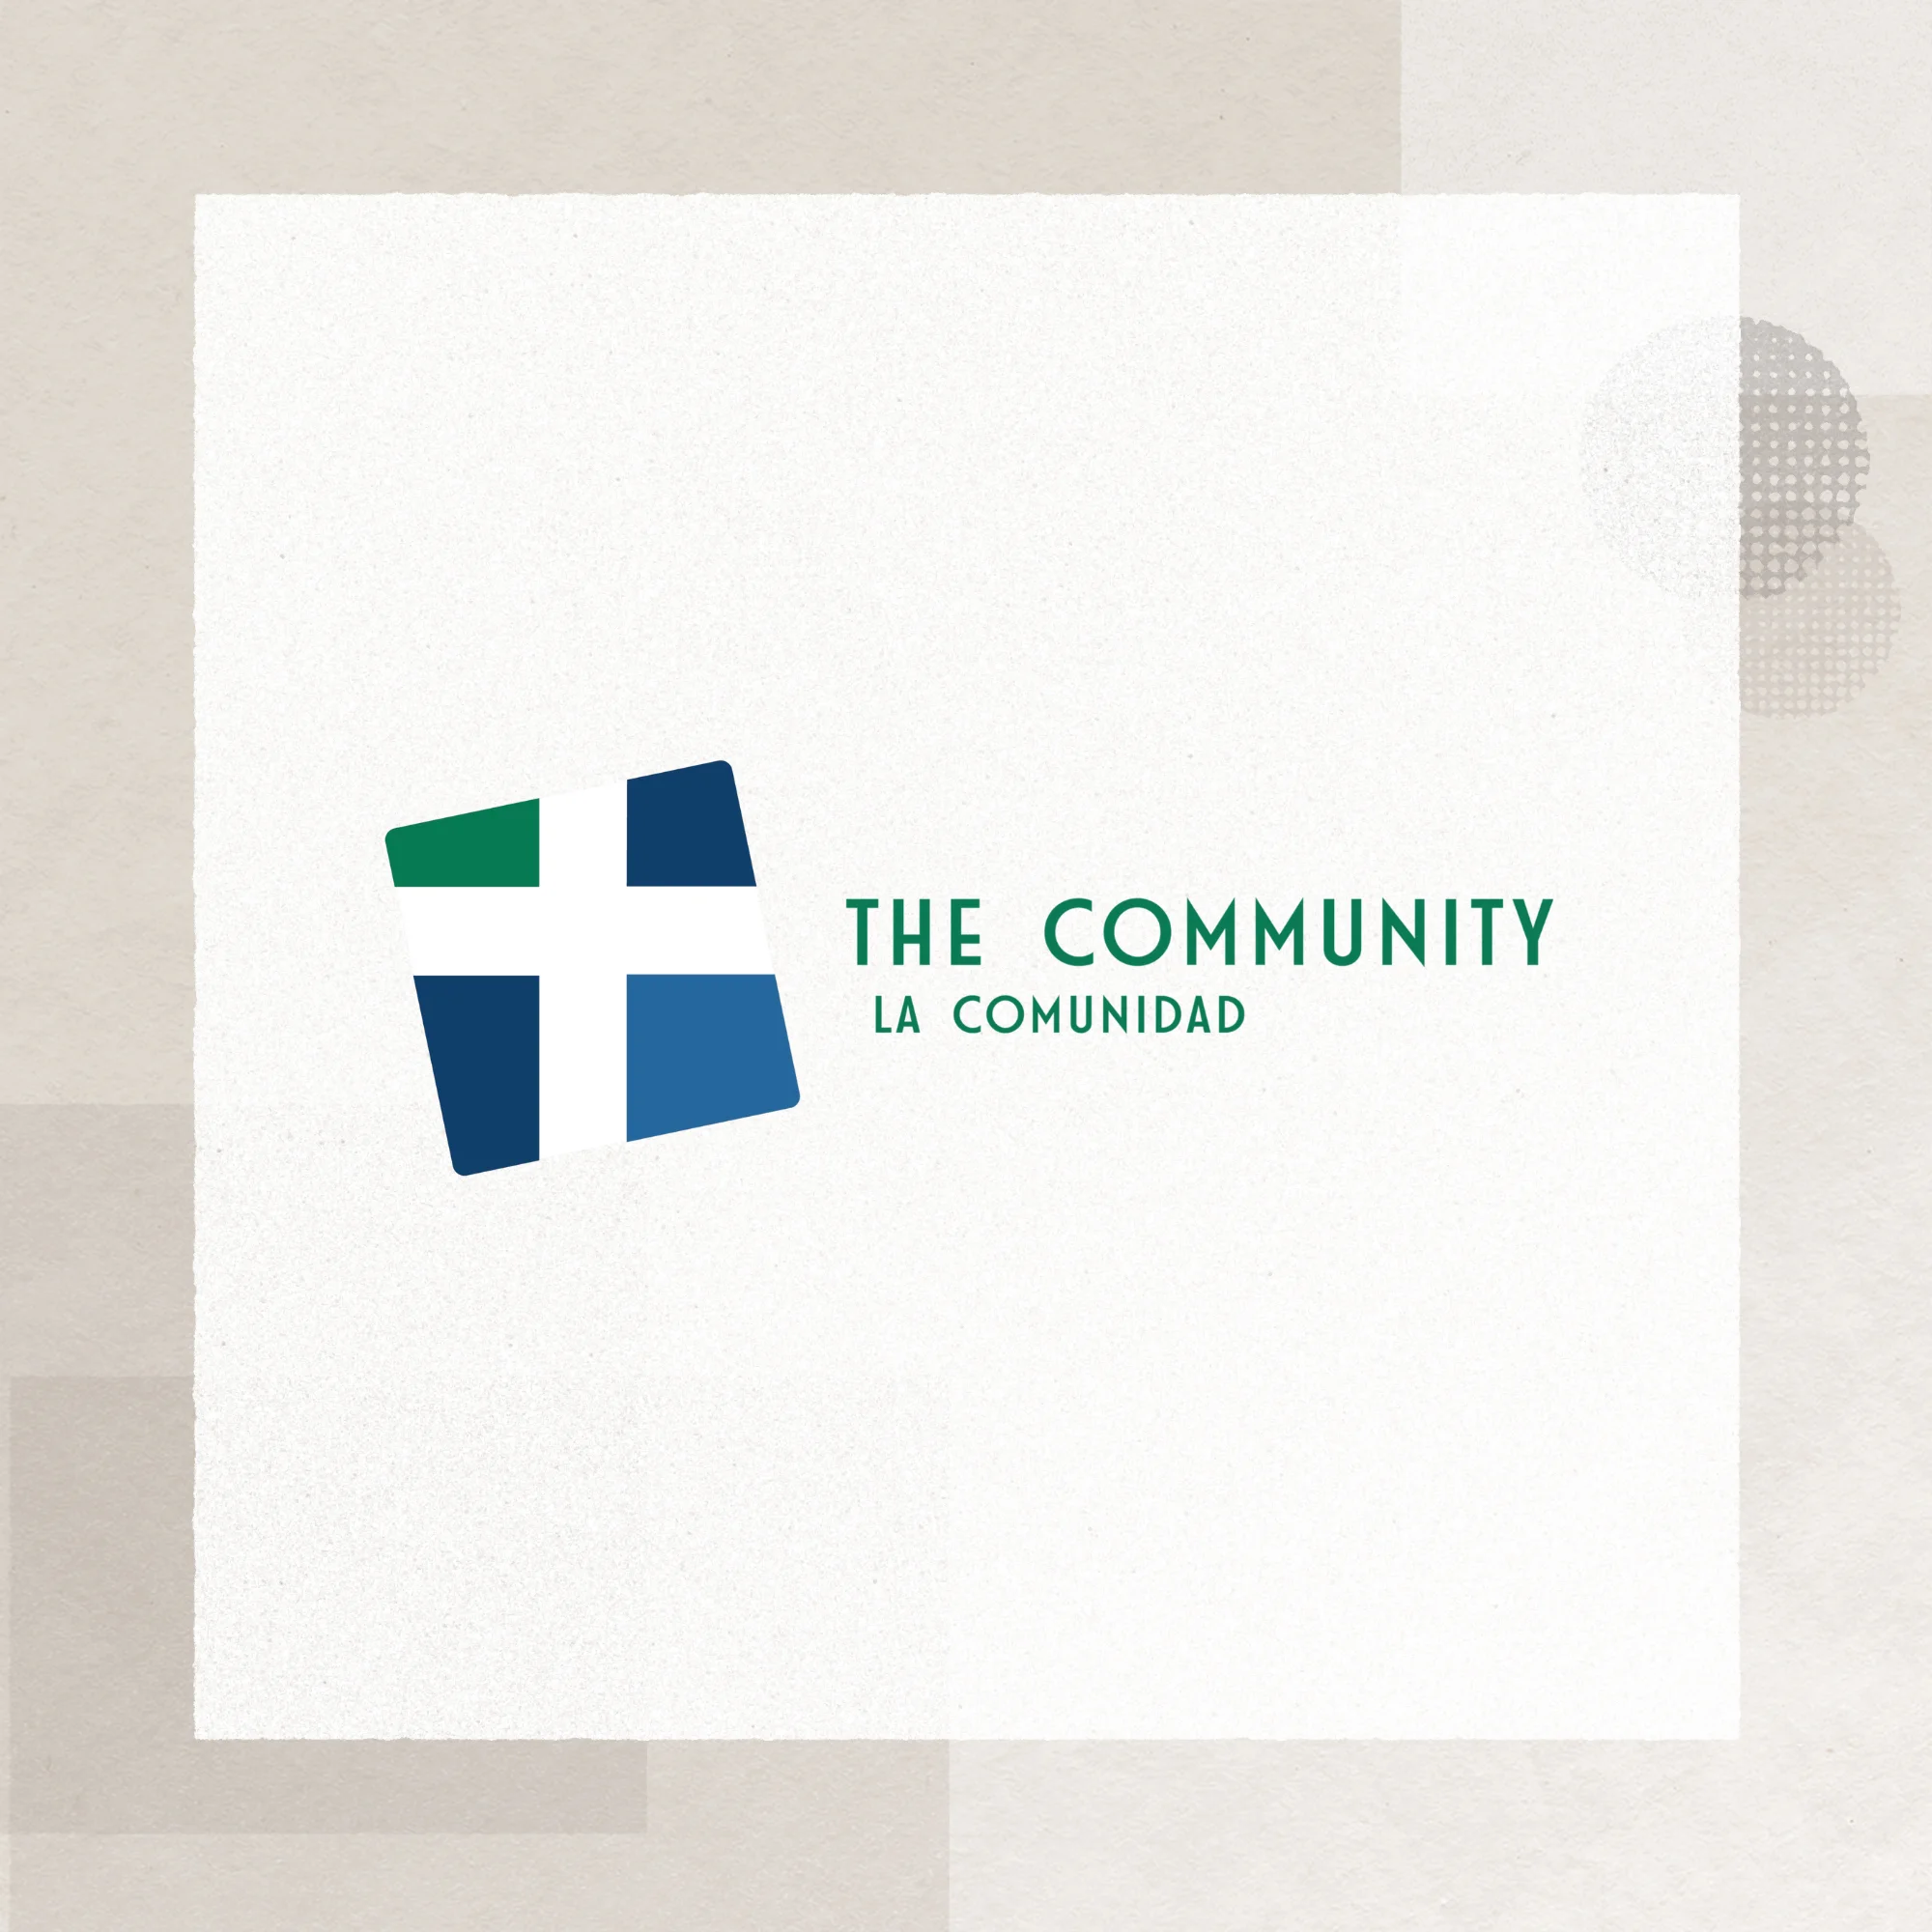 The Community / La Comunidad